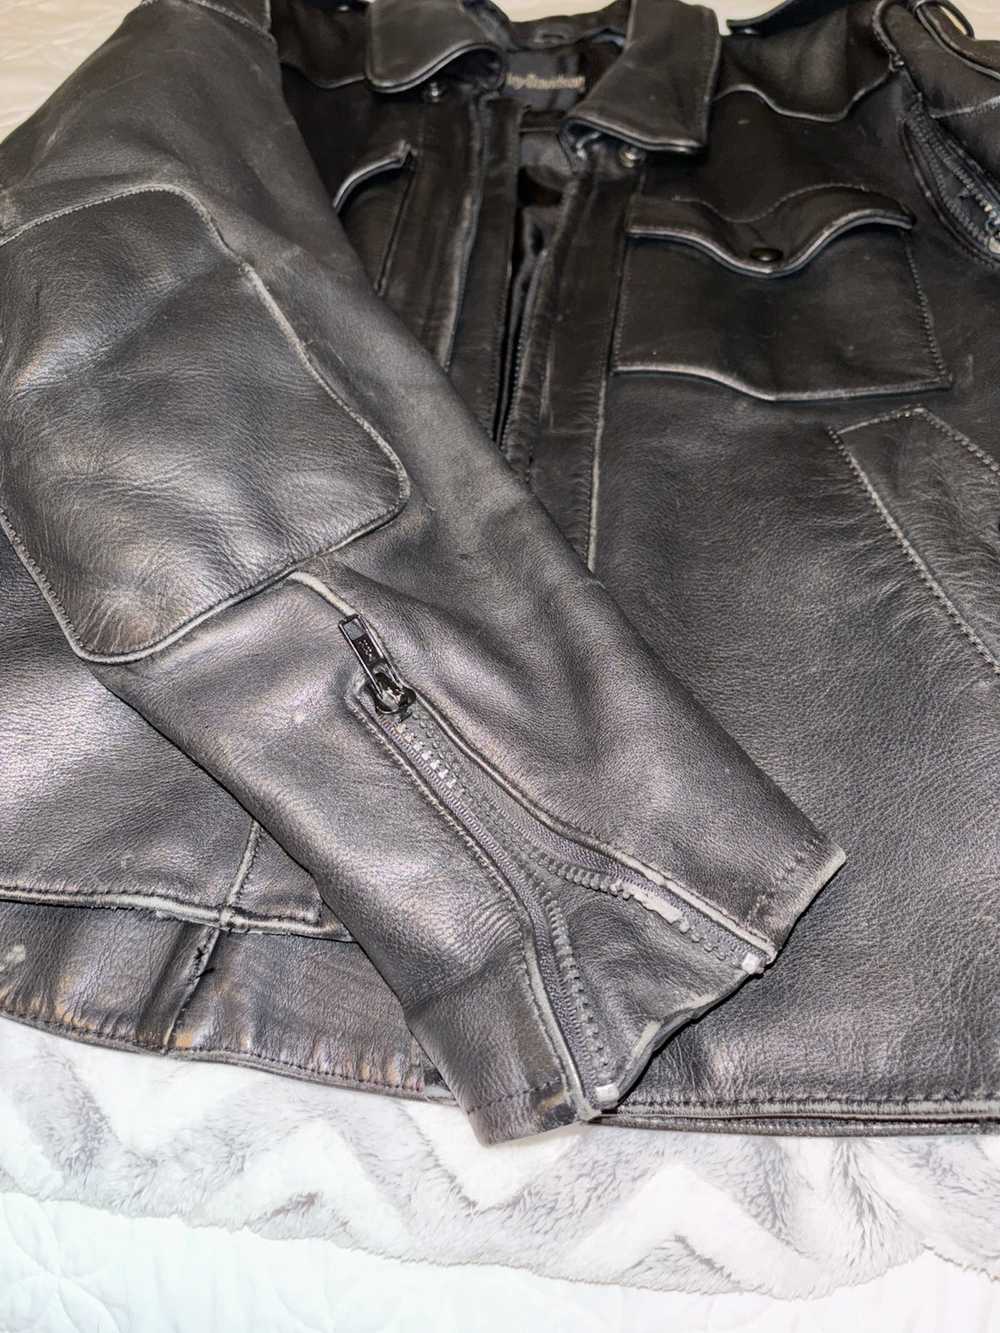 Harley Davidson Harley Davidson leather jacket - image 12